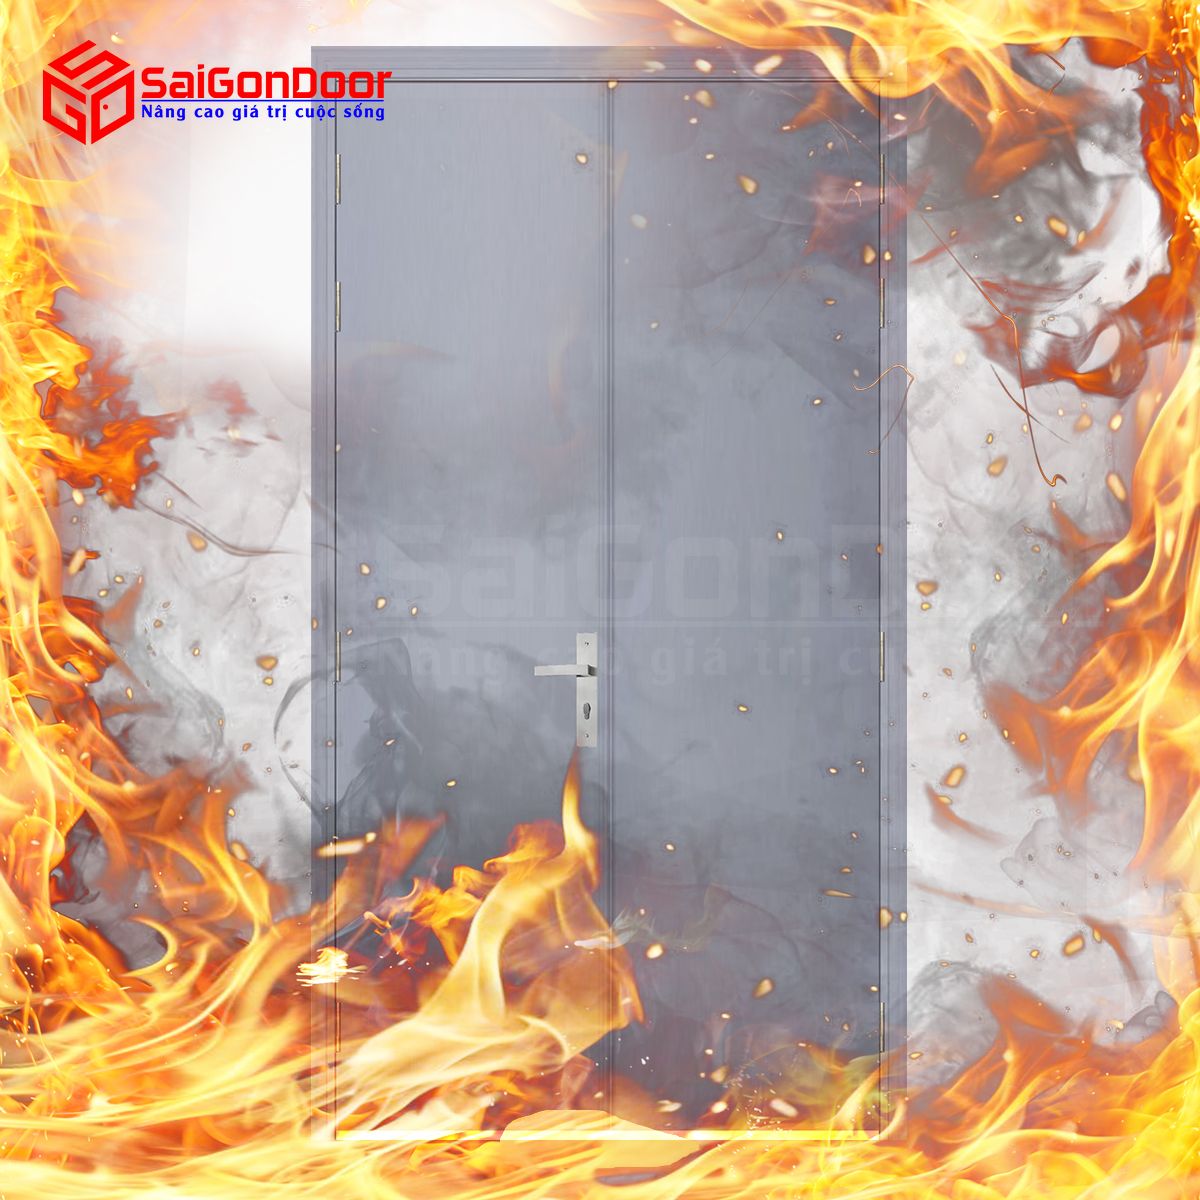 Sử dụng cửa gỗ chống cháy giúp chống bám bụi bẩn cũng như cách âm rất tốt